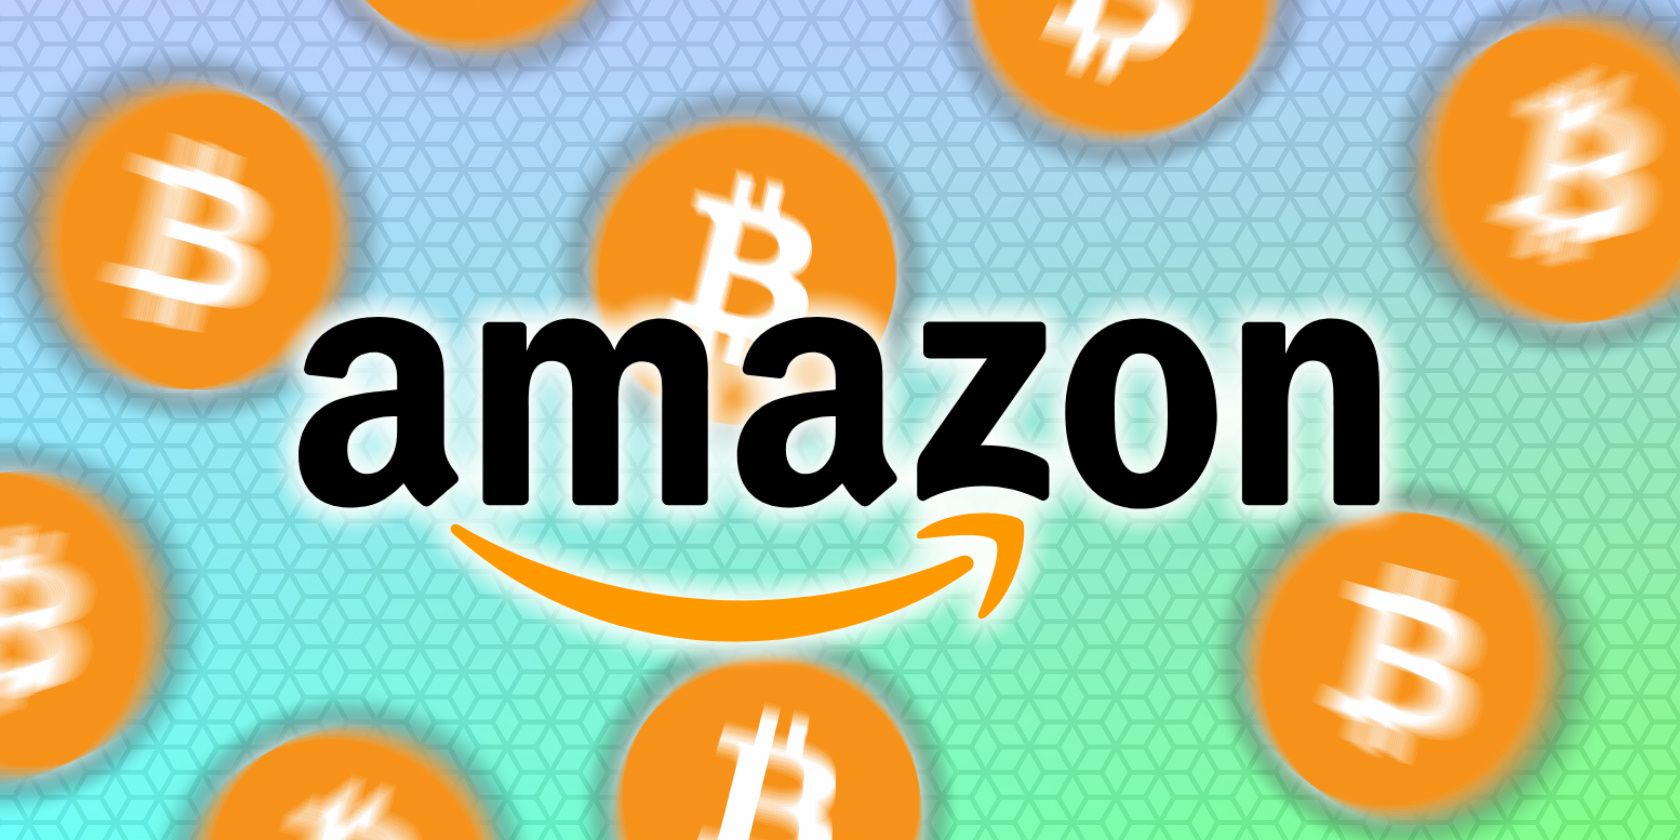 amazon bitcoin feature